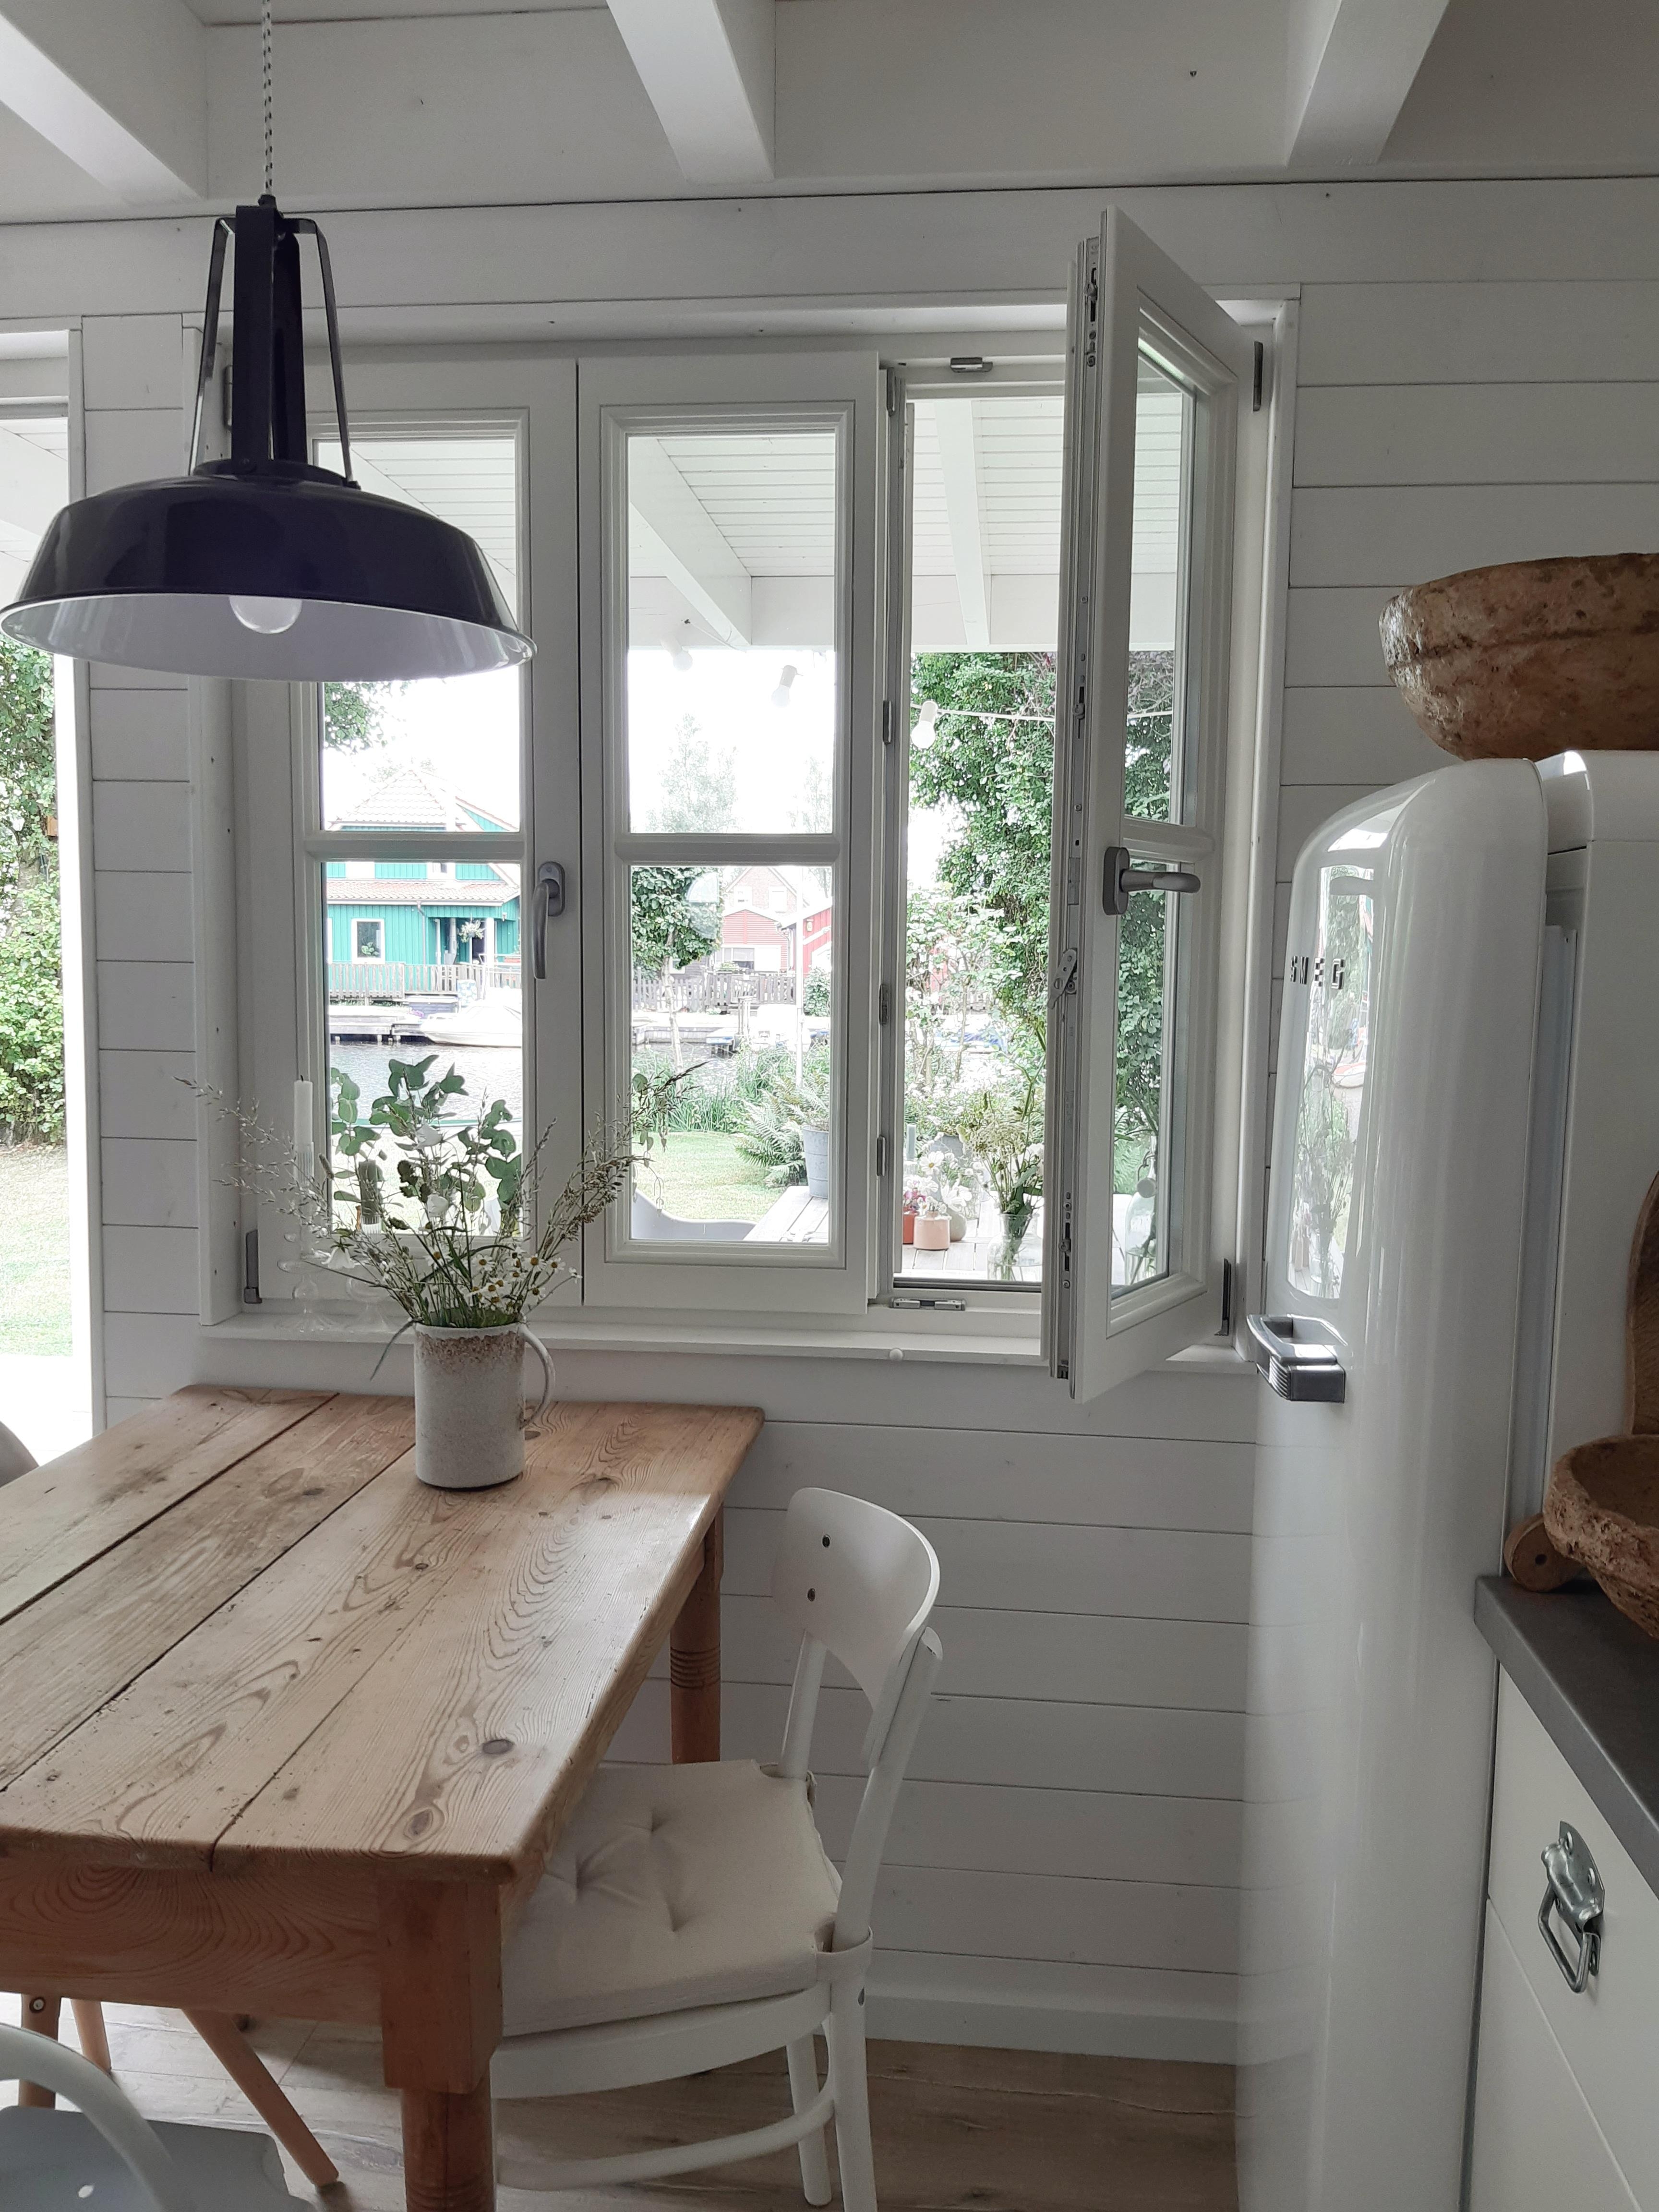 #küche #kleineküche #sommerhäuschen #tinyhouses #smallkitchen #kitchen #couchstyle #lieblingsecke 